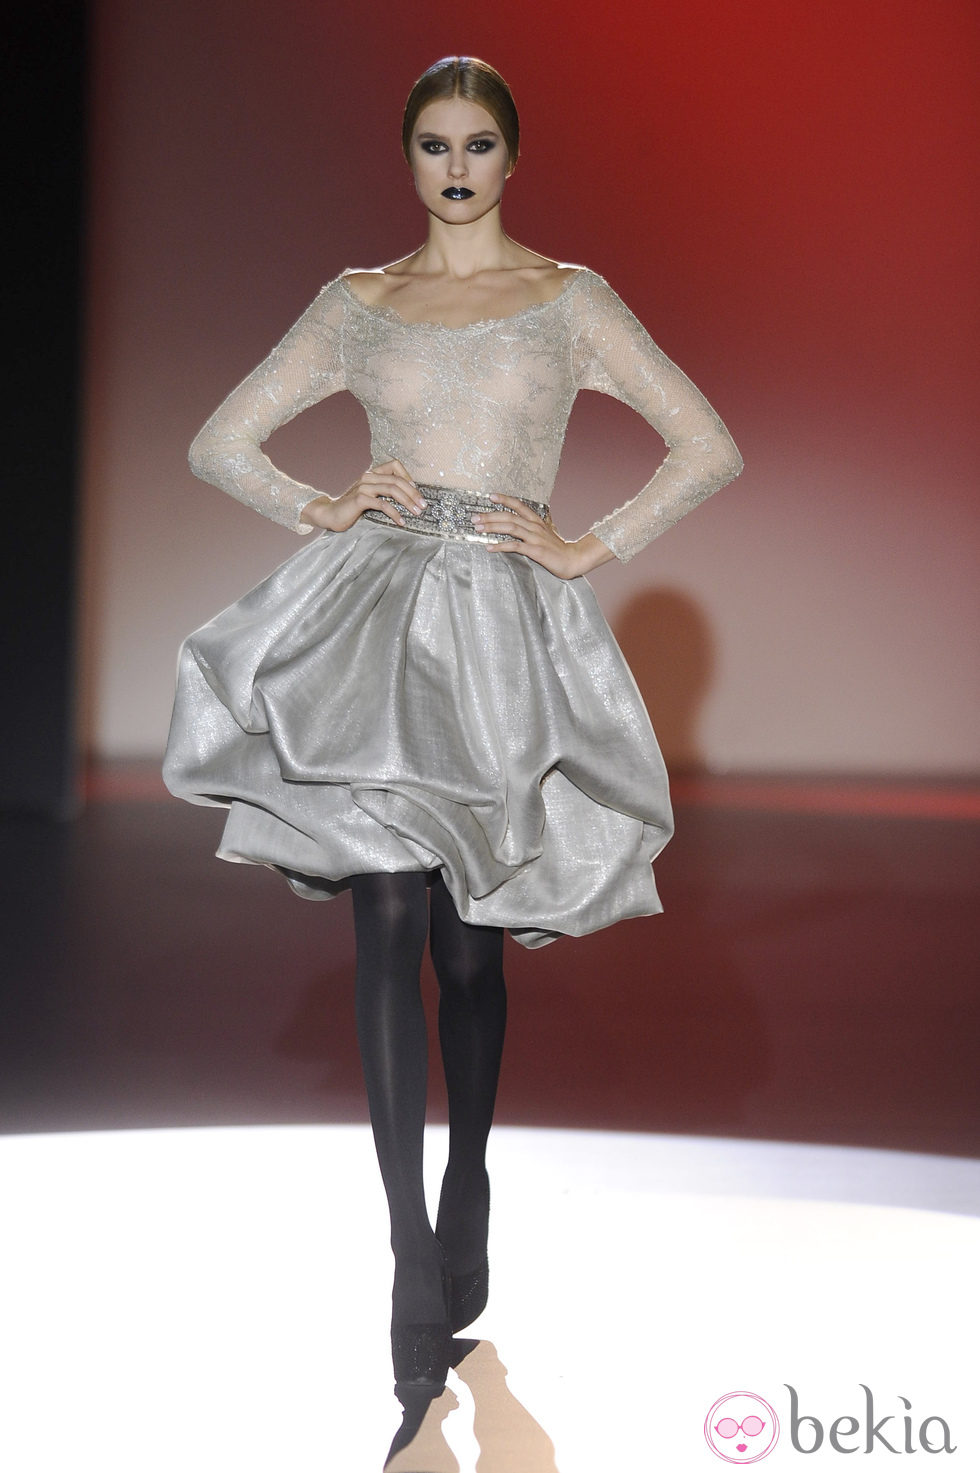 Vestido corto con transparencias para la colección otoño/invierno 2013/2014 de Hannibal Laguna en la Madrid Fashion Week